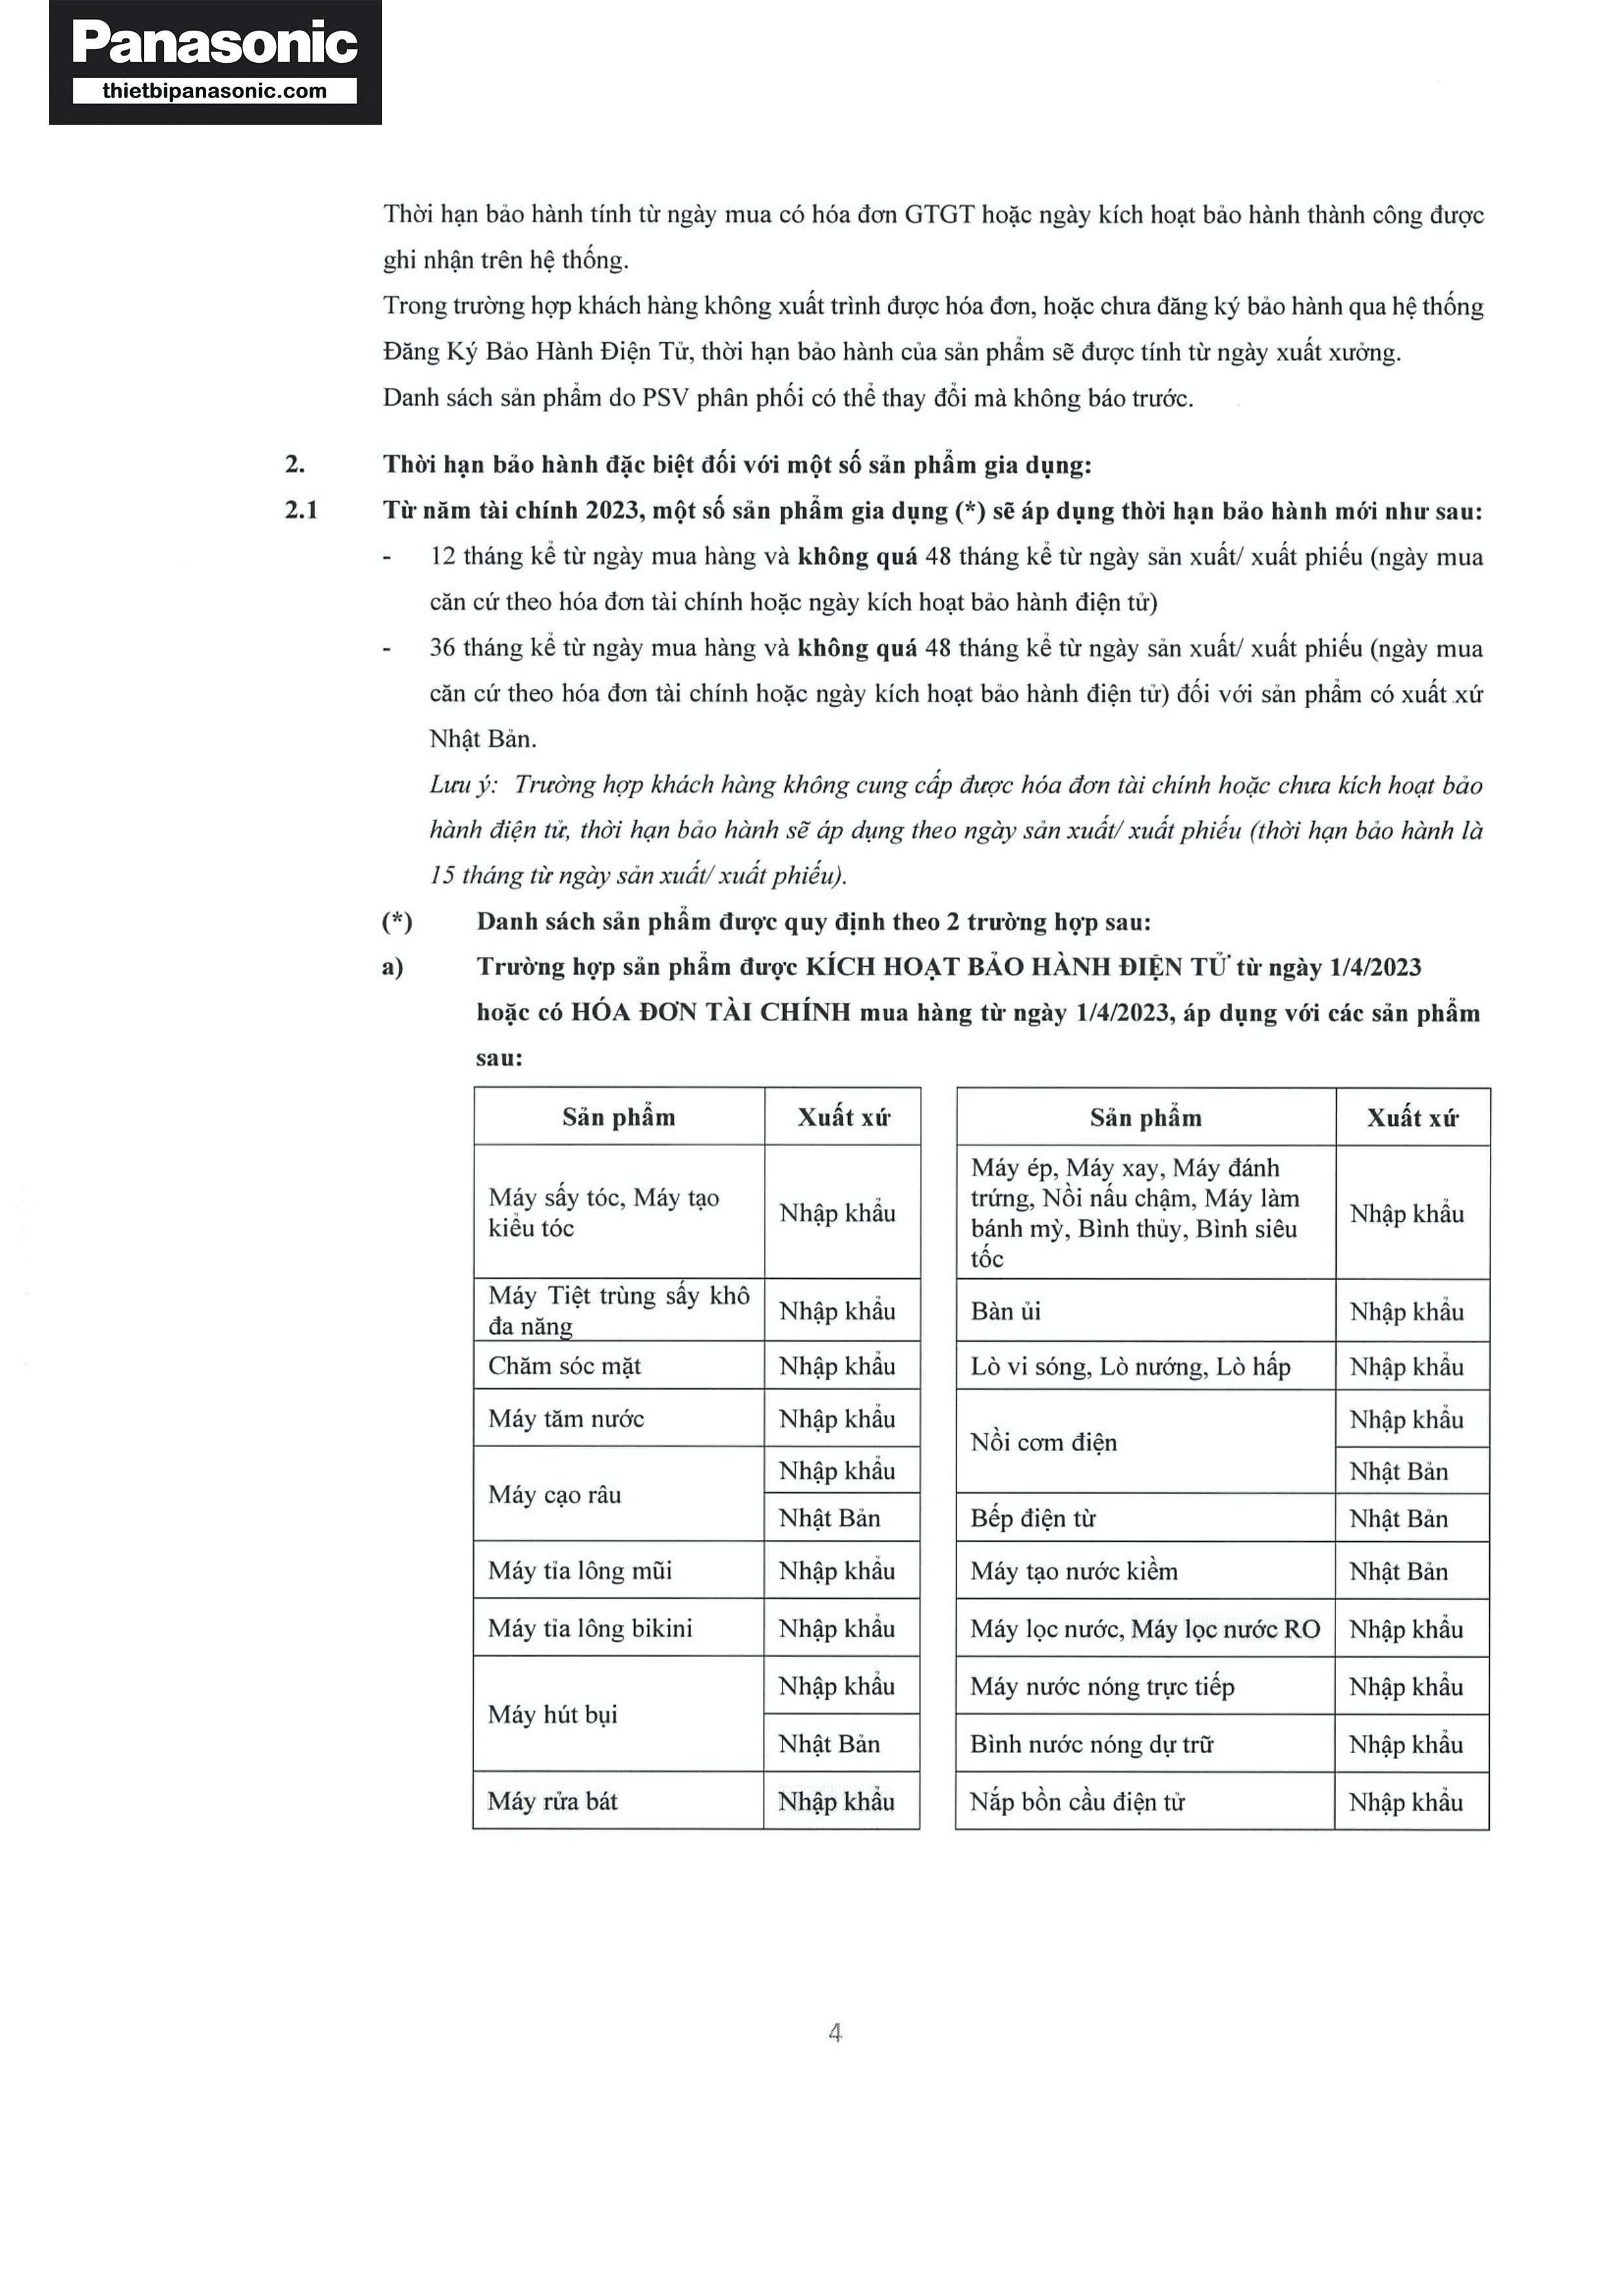 Chính sách bảo hành Panasonic năm 2023-2024 (Trang 4/6)